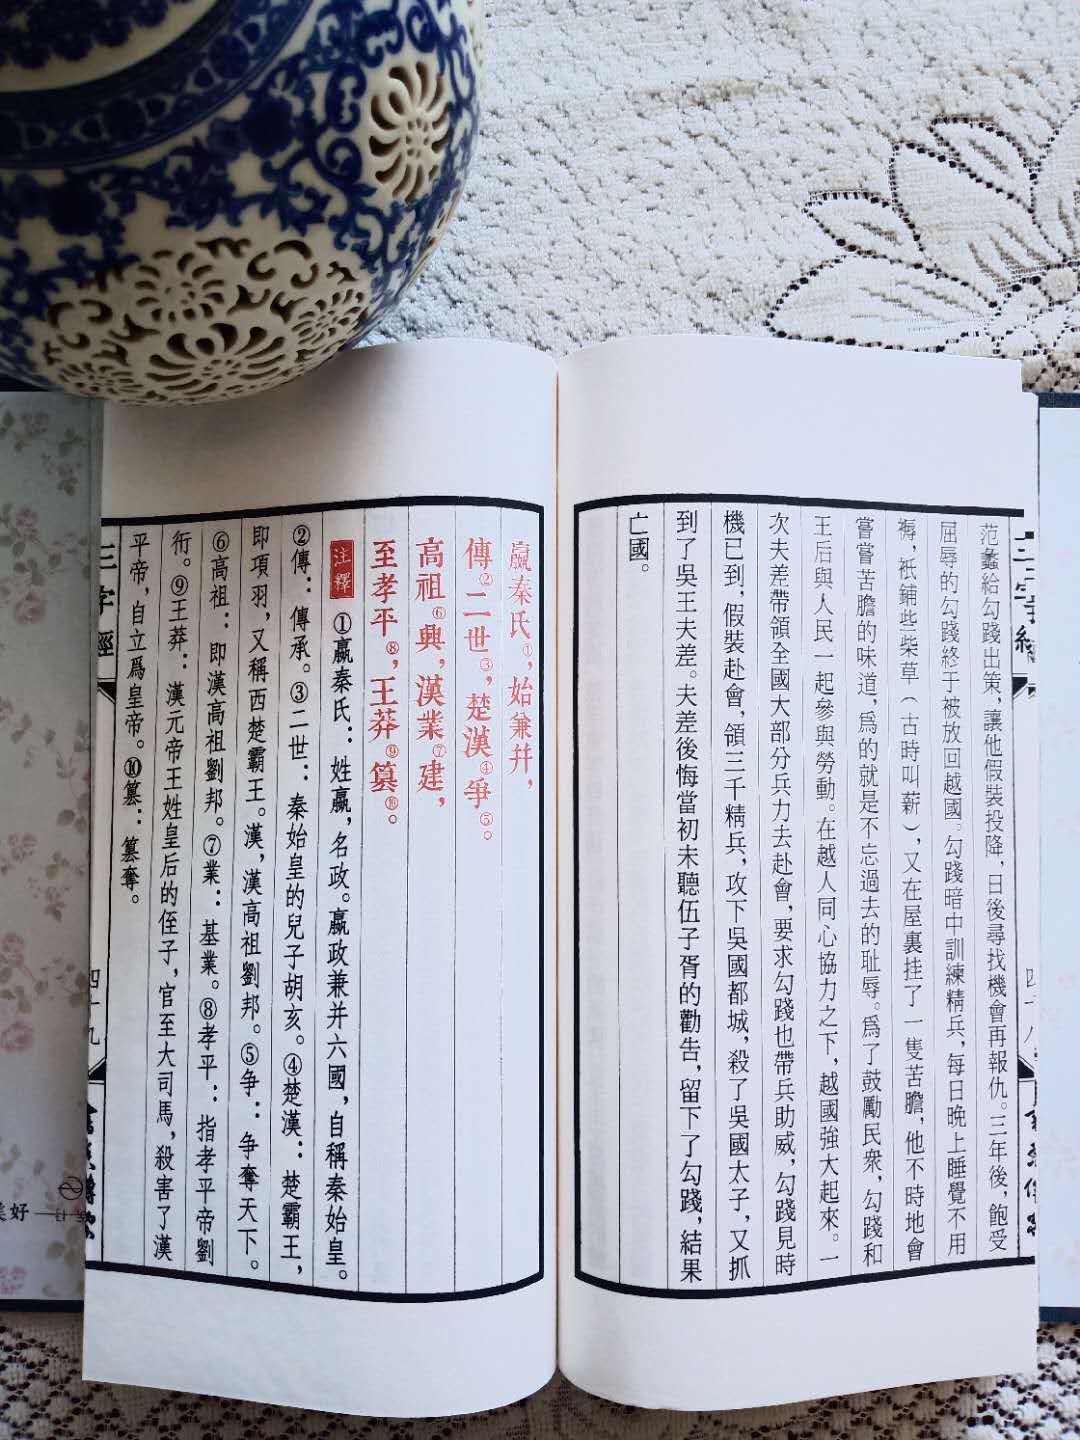 三字经评注本 包邮图书 国学经典 一函一册 宣纸线装 古籍影印1